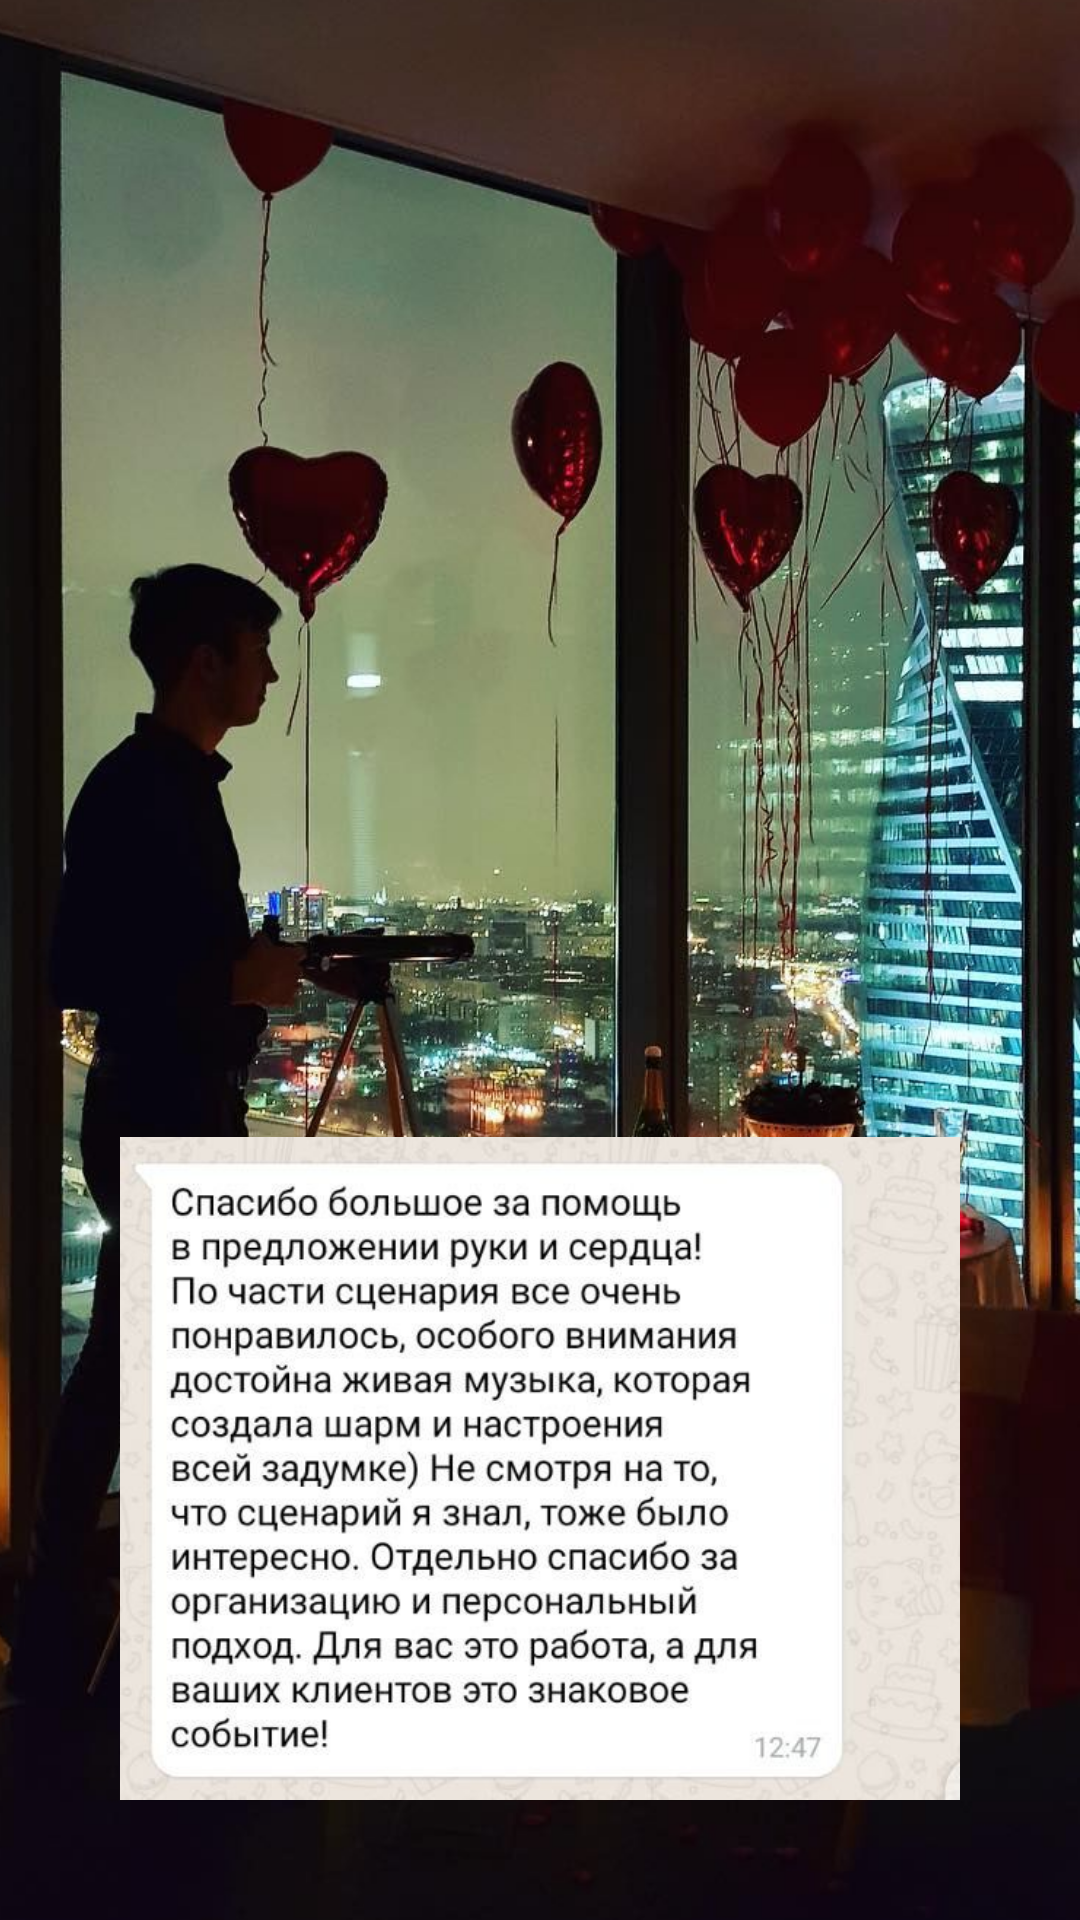 Организация предложения руки и сердца в Хабаровске
от компании Pandaevent